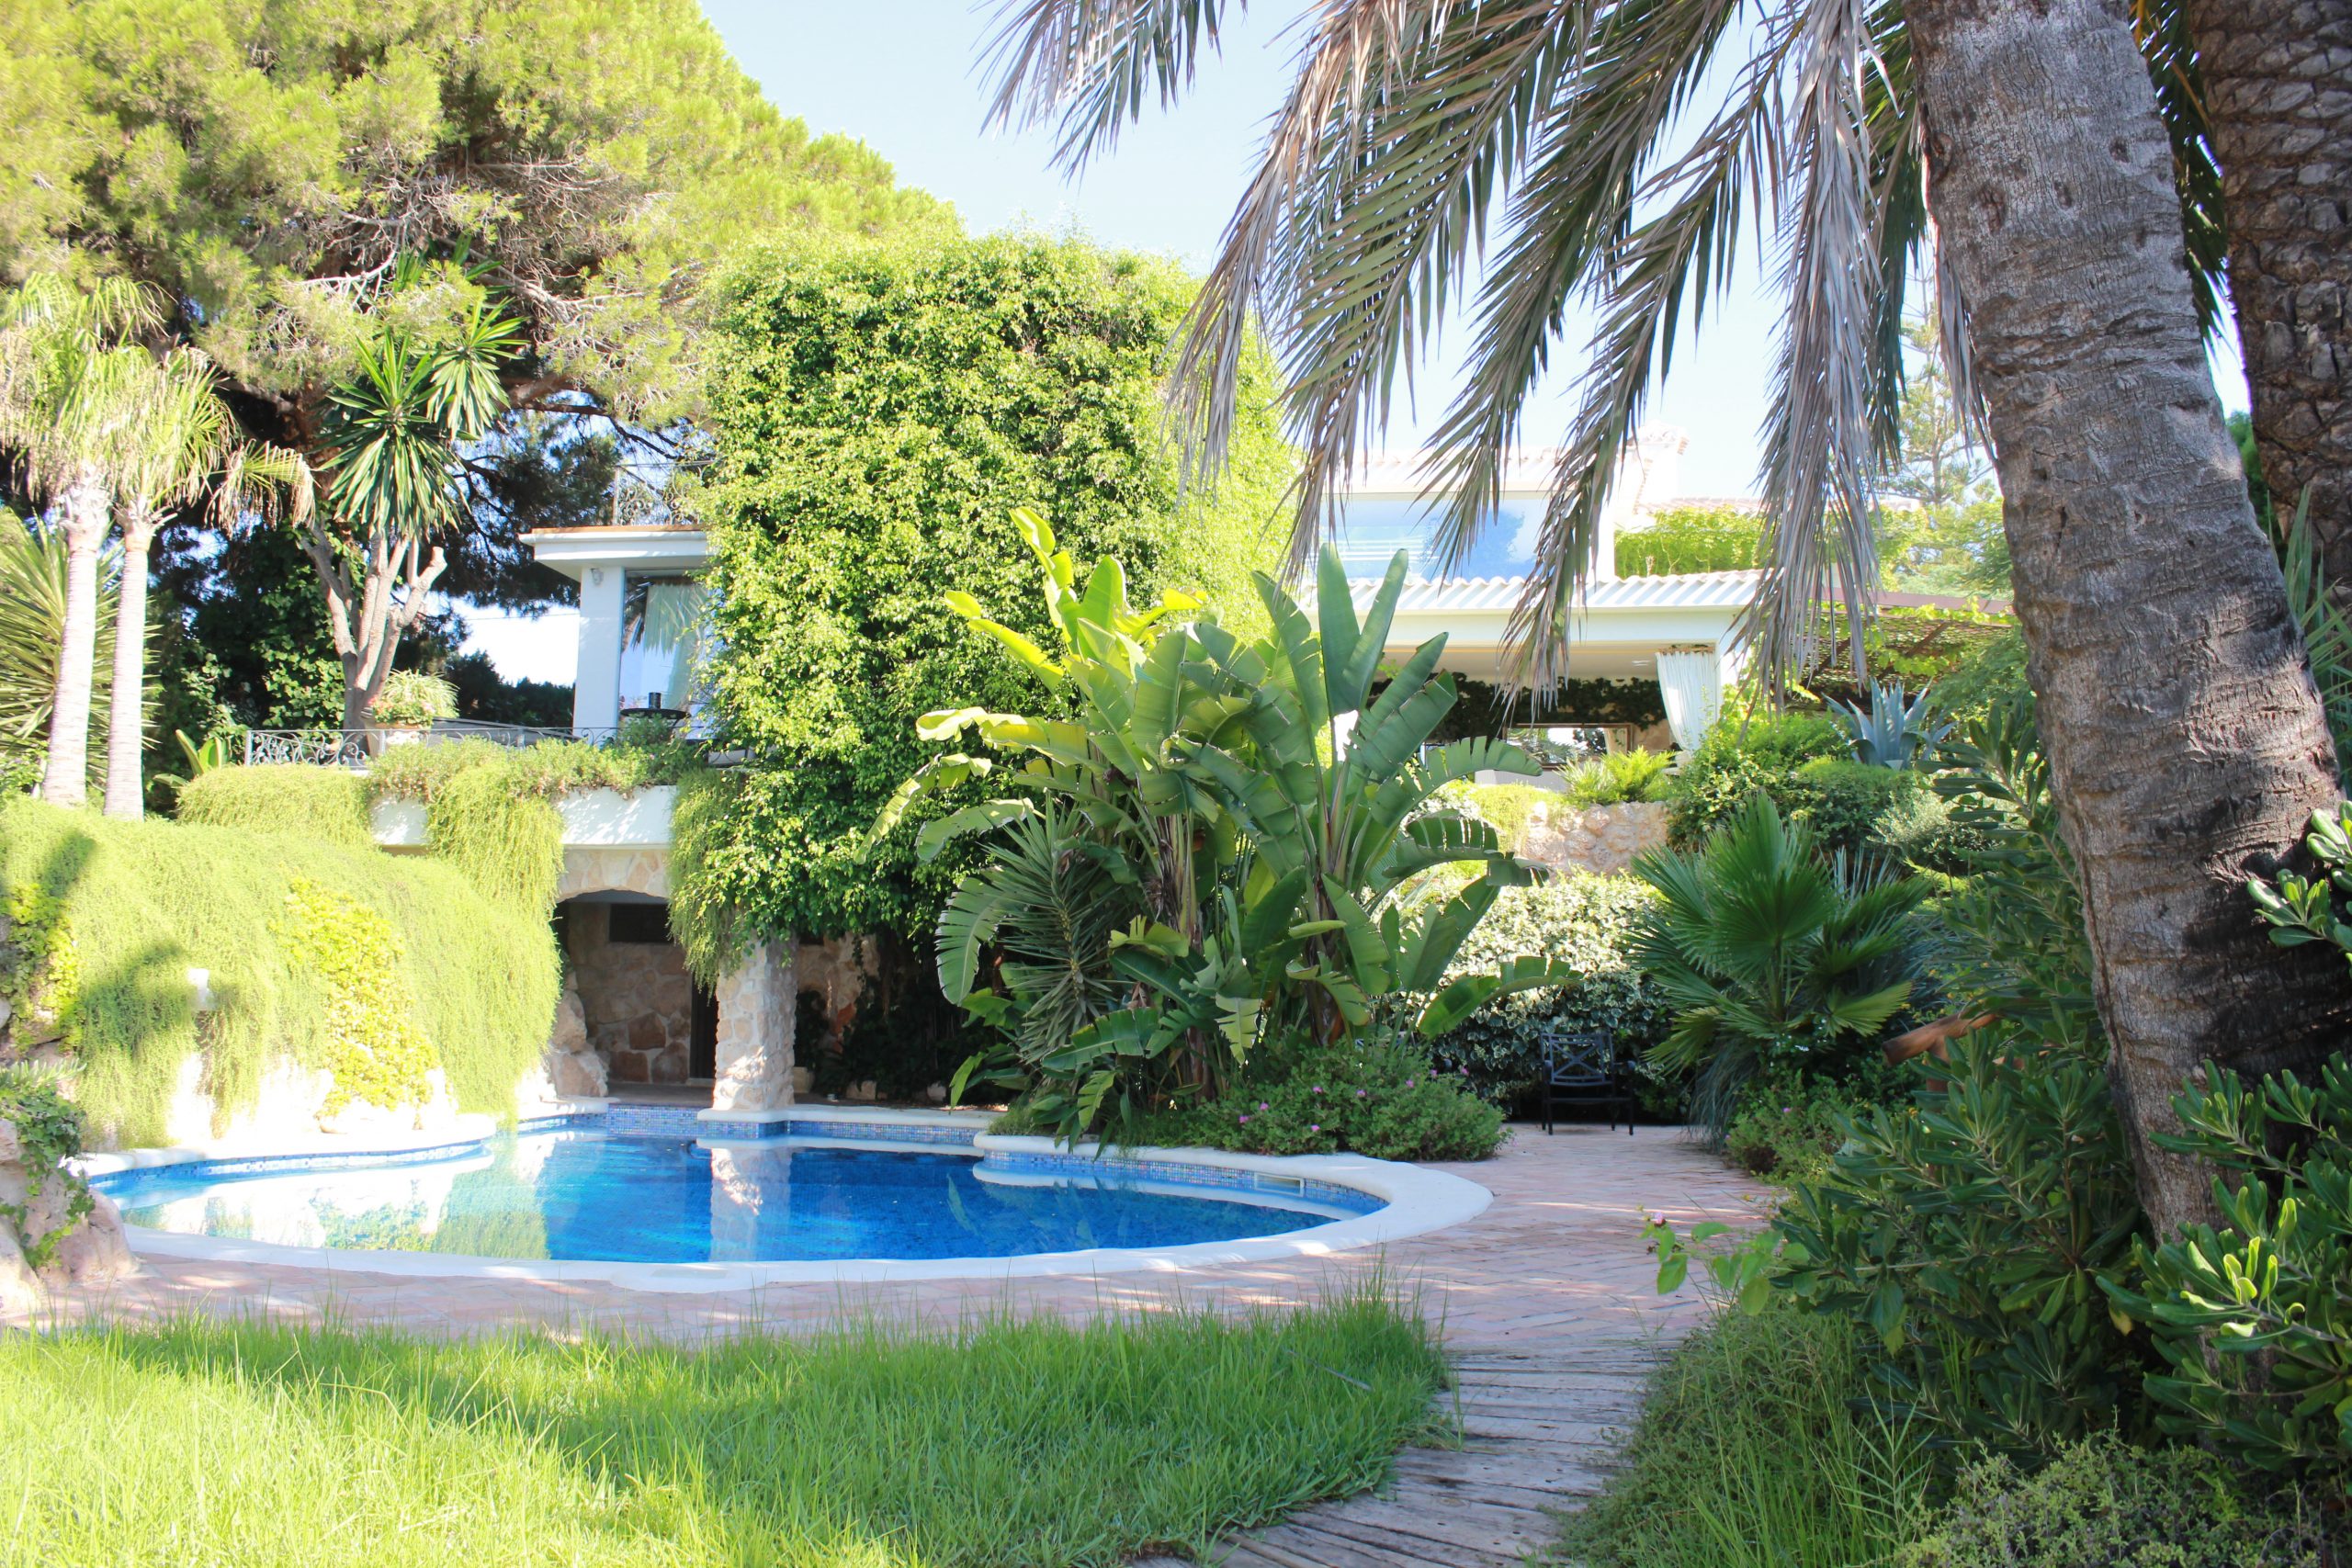 Portal Inmobiliario de Lujo en Cabo Roig, presenta villa de lujo venta en Alicante, chalet exclusivo para comprar e inmuebles exclusivas en venta en Costa Blanca.